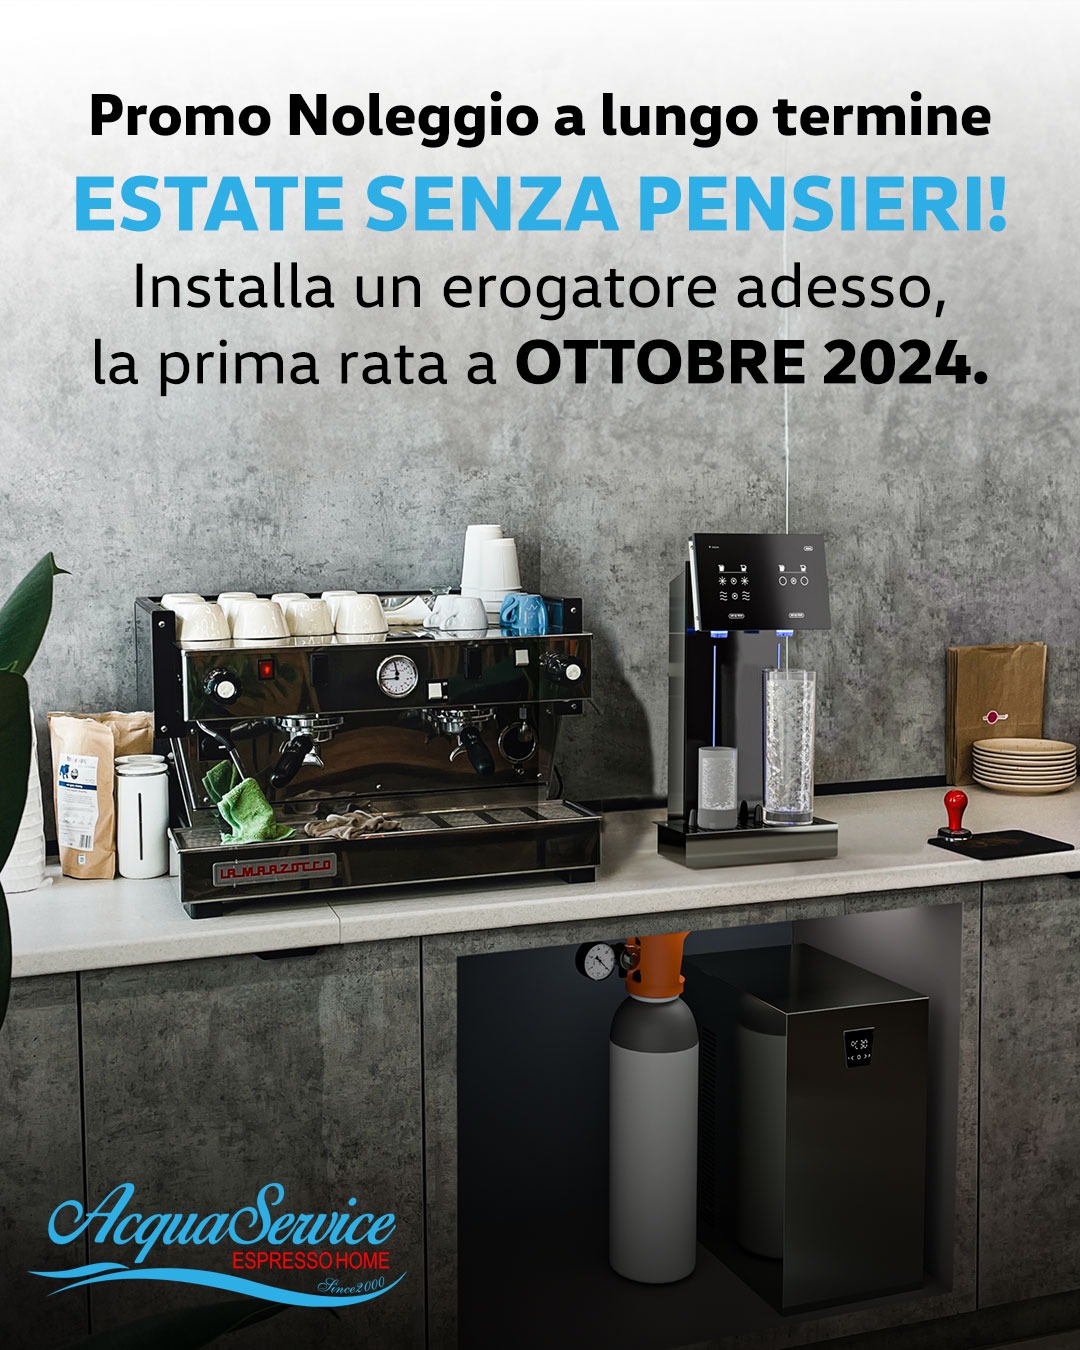 Promo Noleggio - Estate Senza Pensieri - Acqua Service - Espresso Home - Since 2000